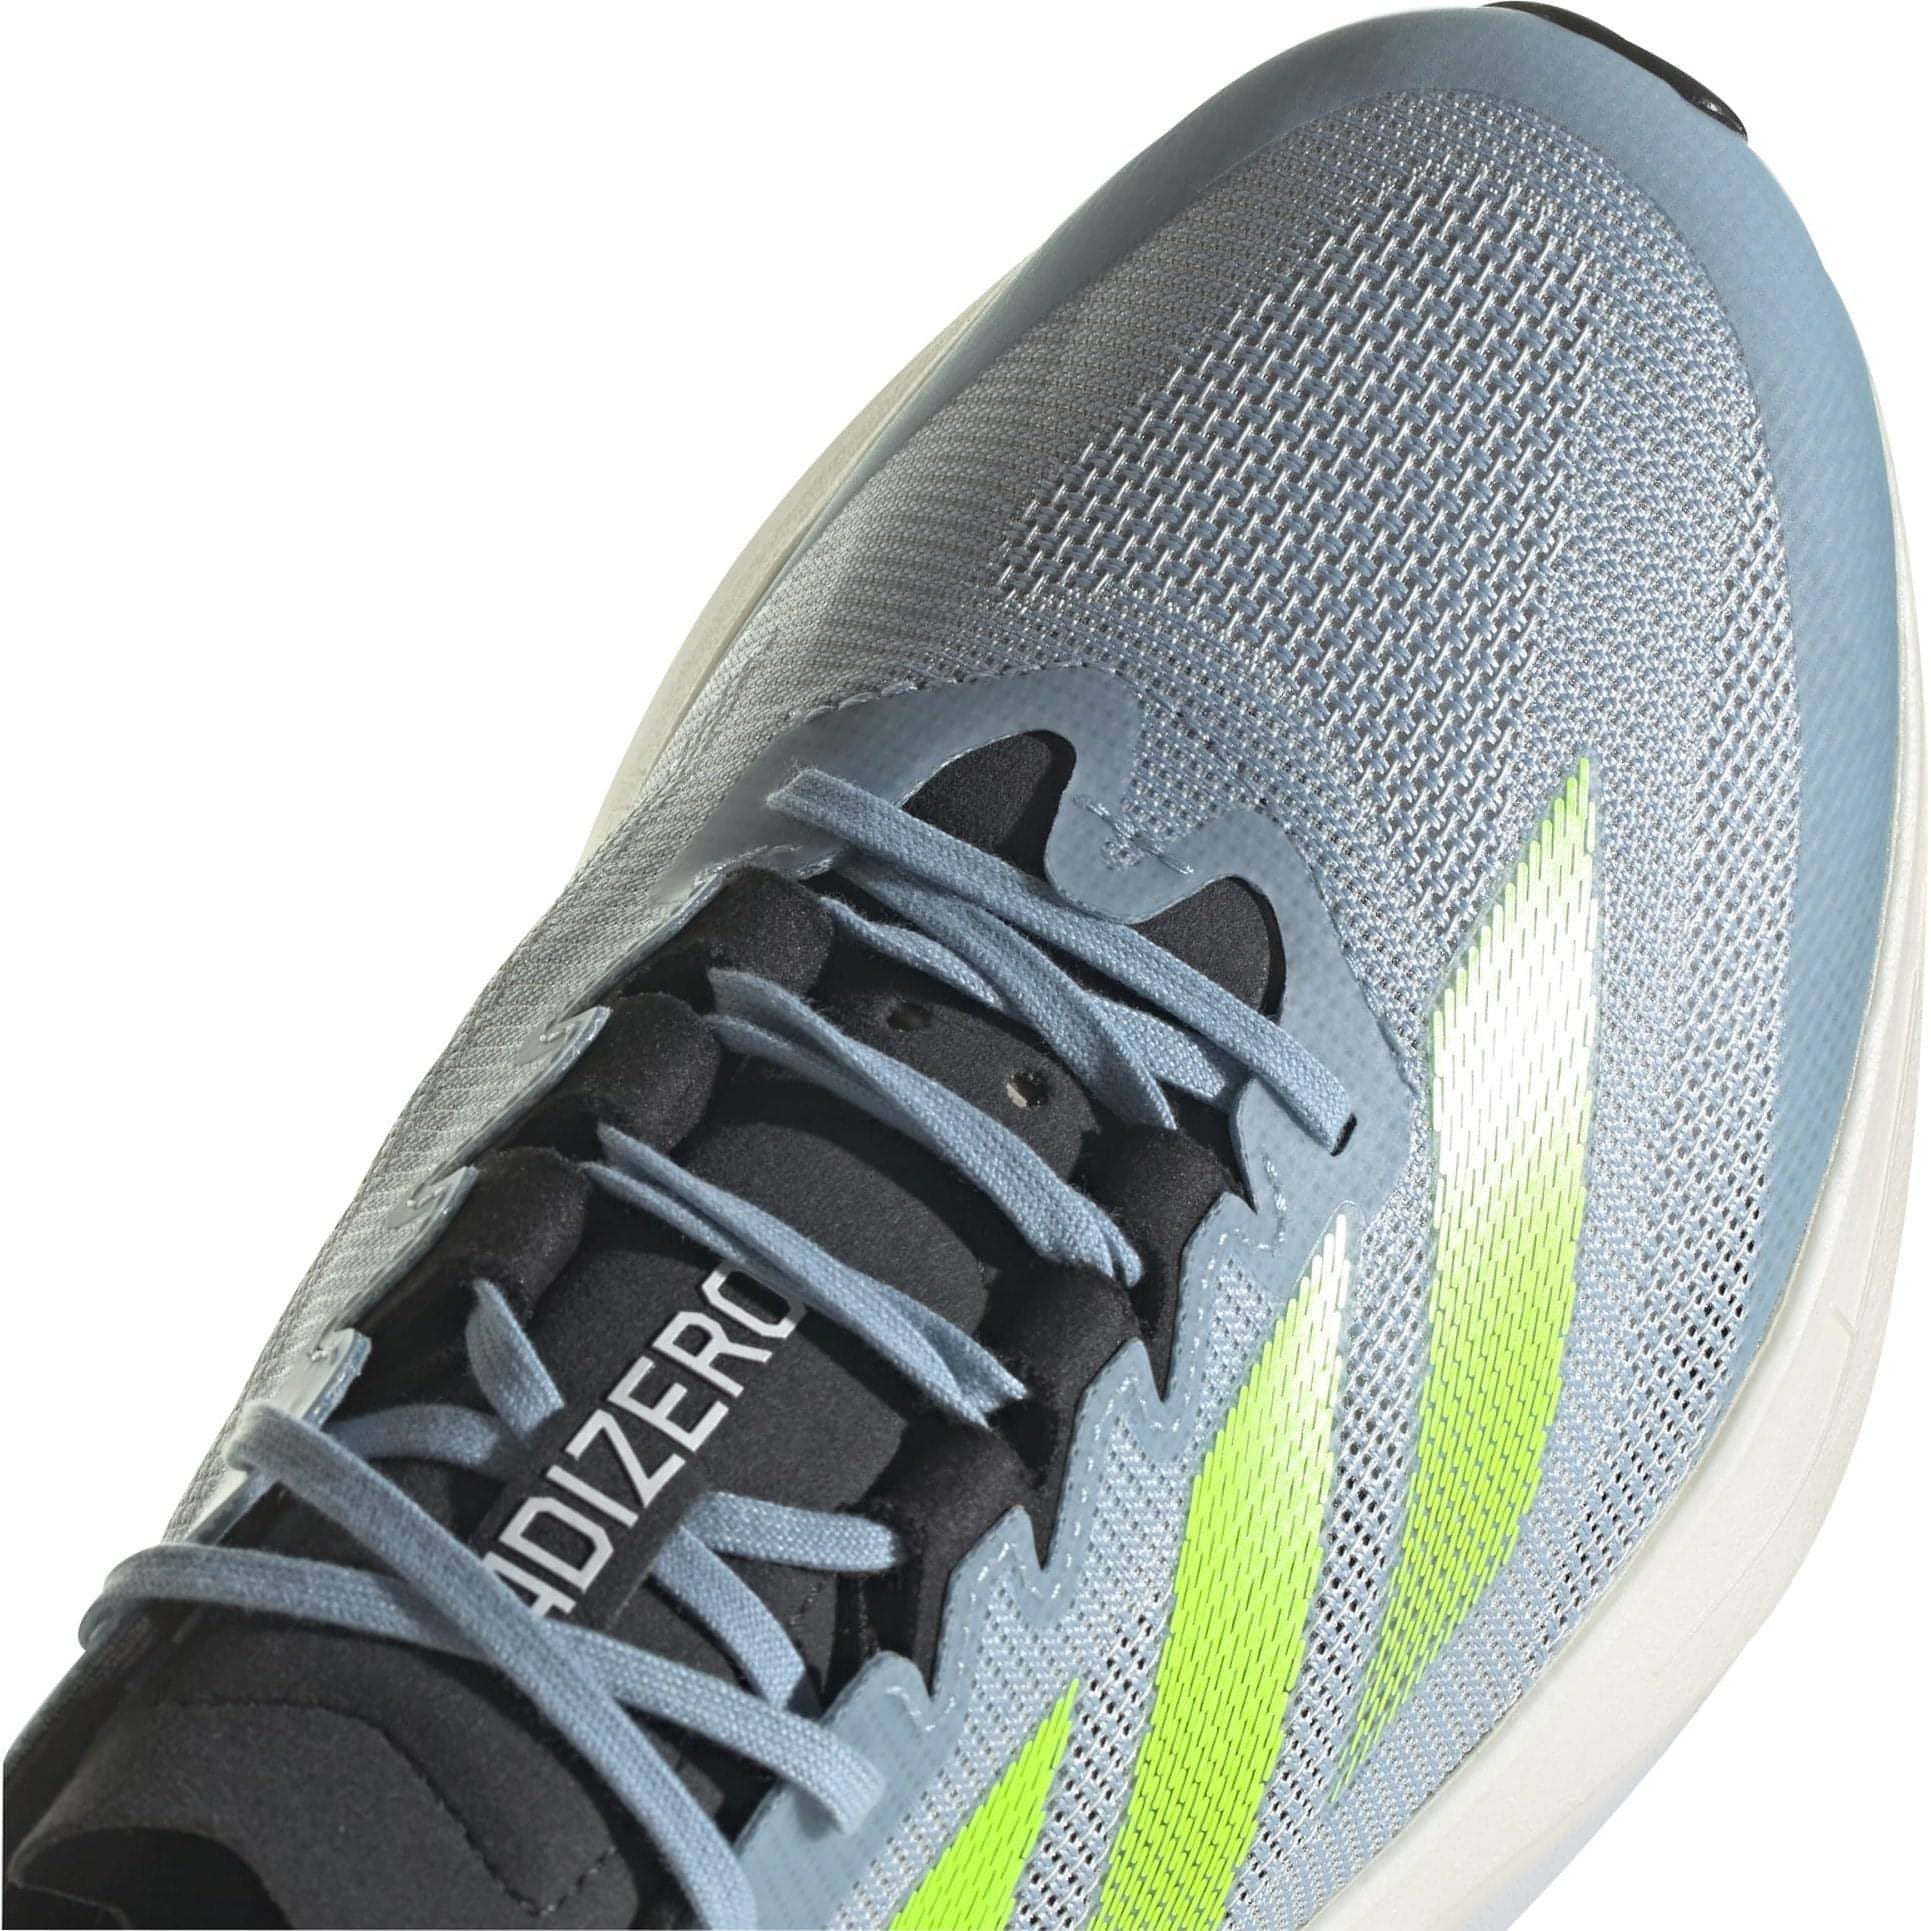 Adidas Adizero Boston Shoes Id4233 Details